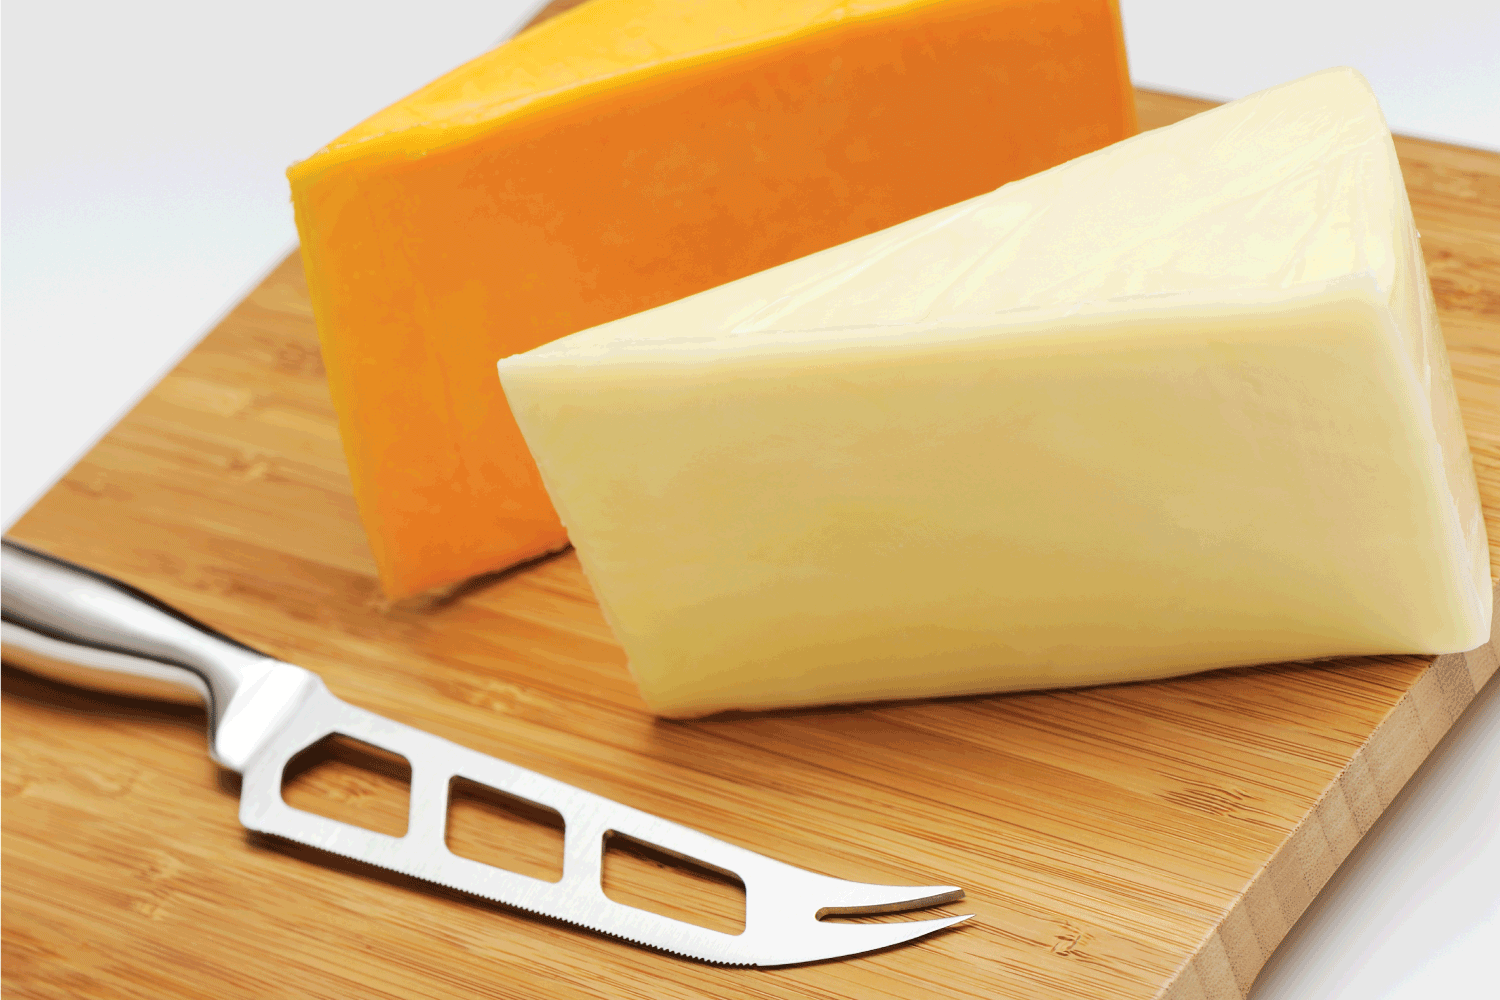 用奶酪刀在砧板上切两片切达干酪(白色和黄色)。